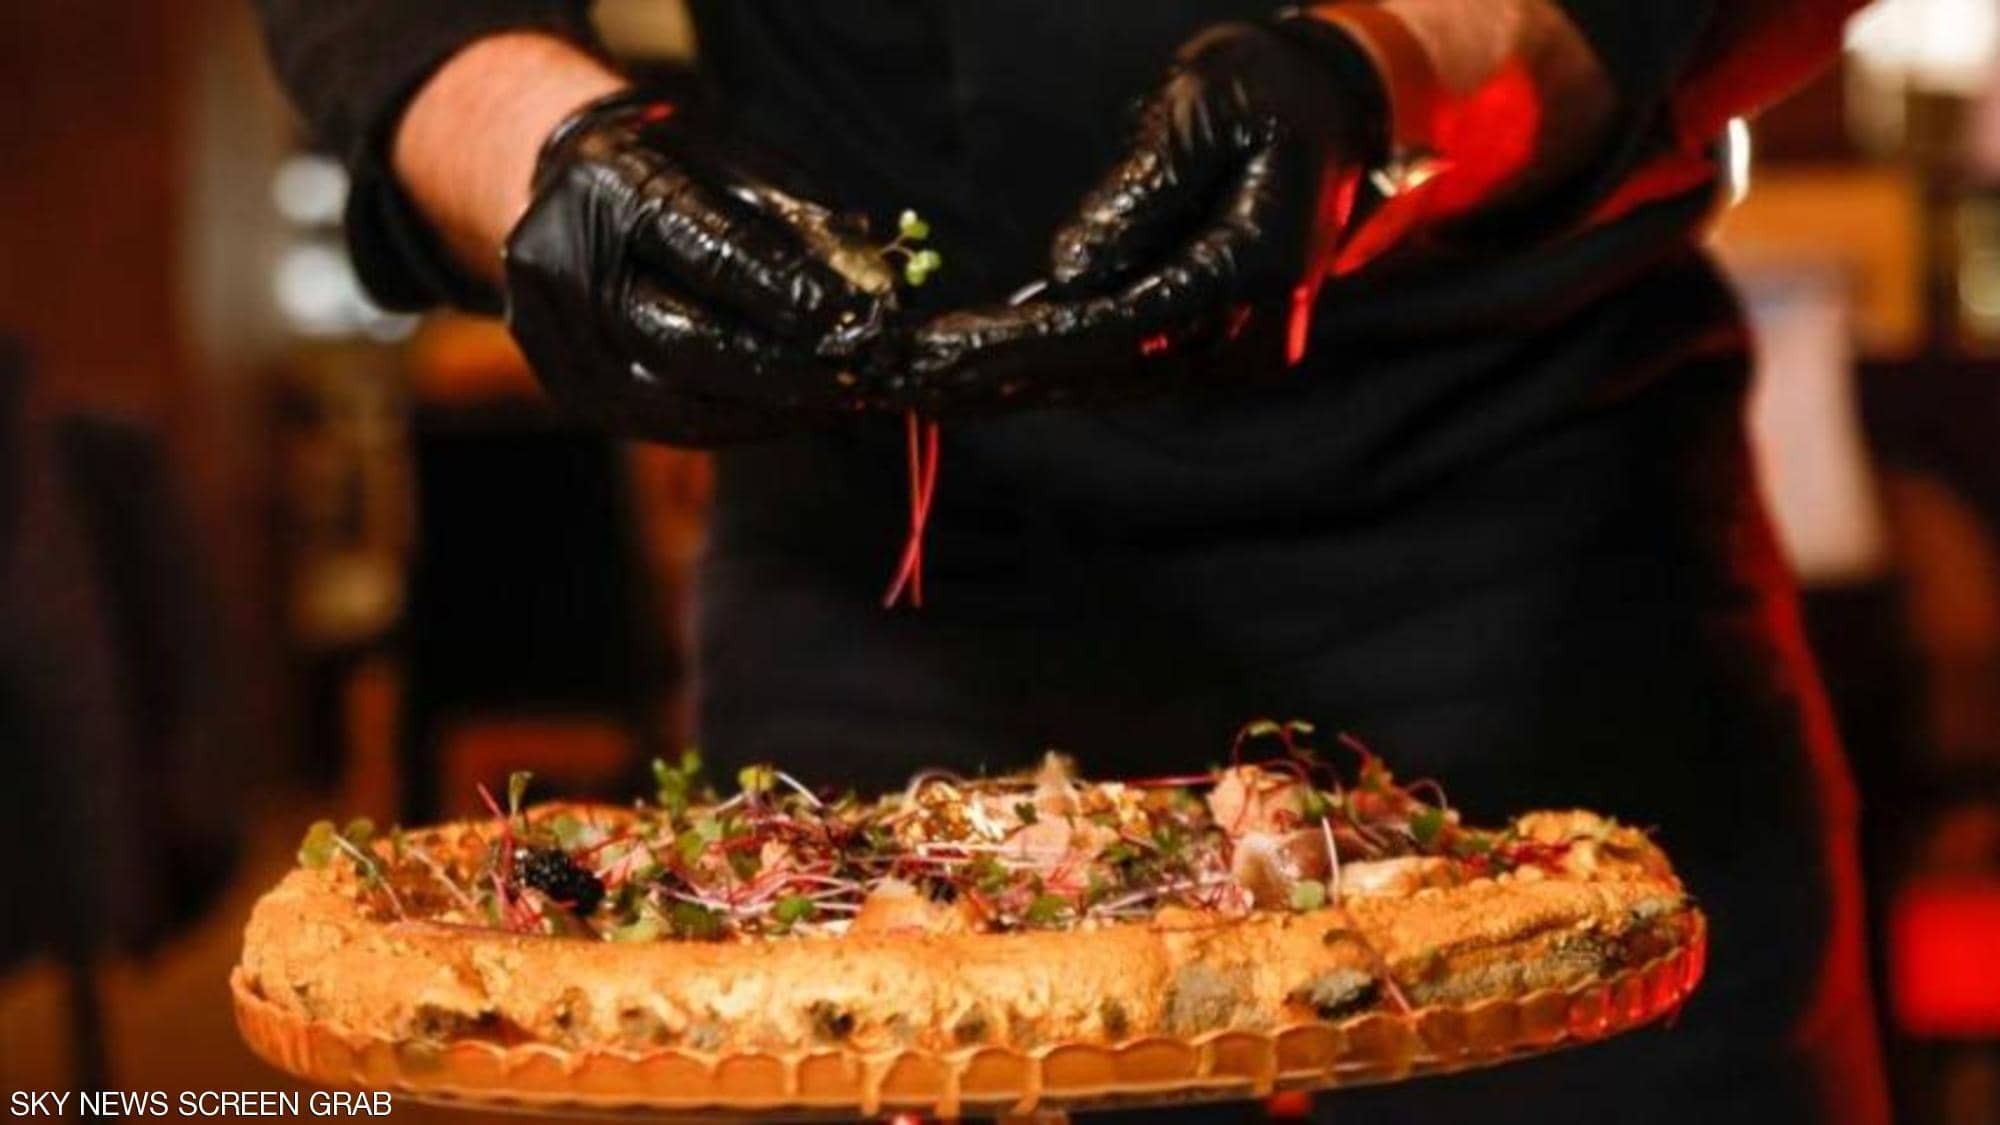 شاهدوا | بسعر "باهظ" طباخ تونسي يقدم "بيتزا الذهب" لزبائنه